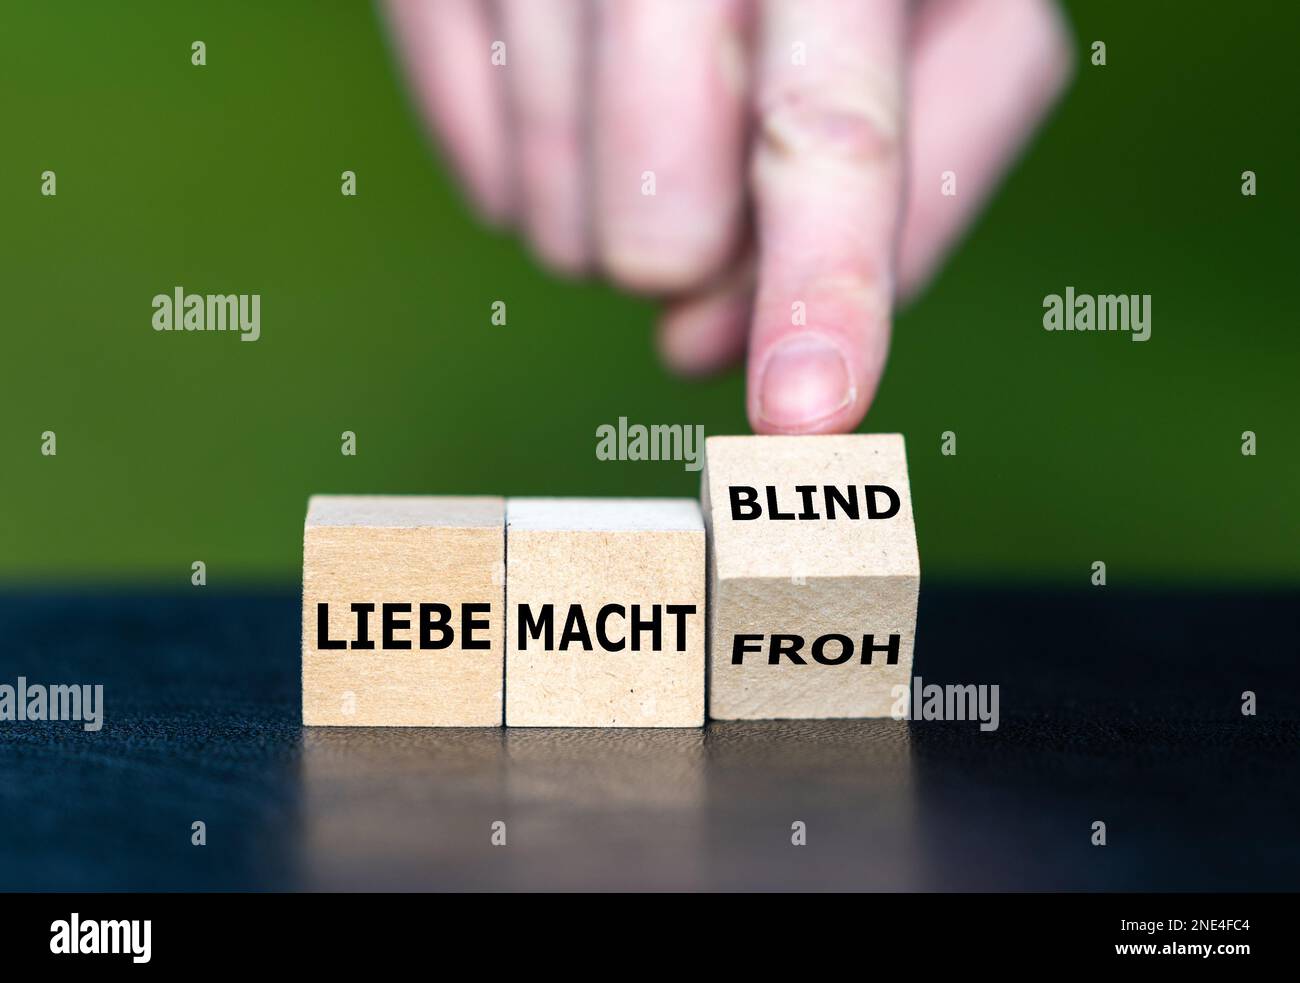 La main tourne des cubes en bois et change le dicton allemand 'liebe macht froh' (l'amour rend heureux) à 'liebe macht blind' (l'amour rend aveugle). Banque D'Images